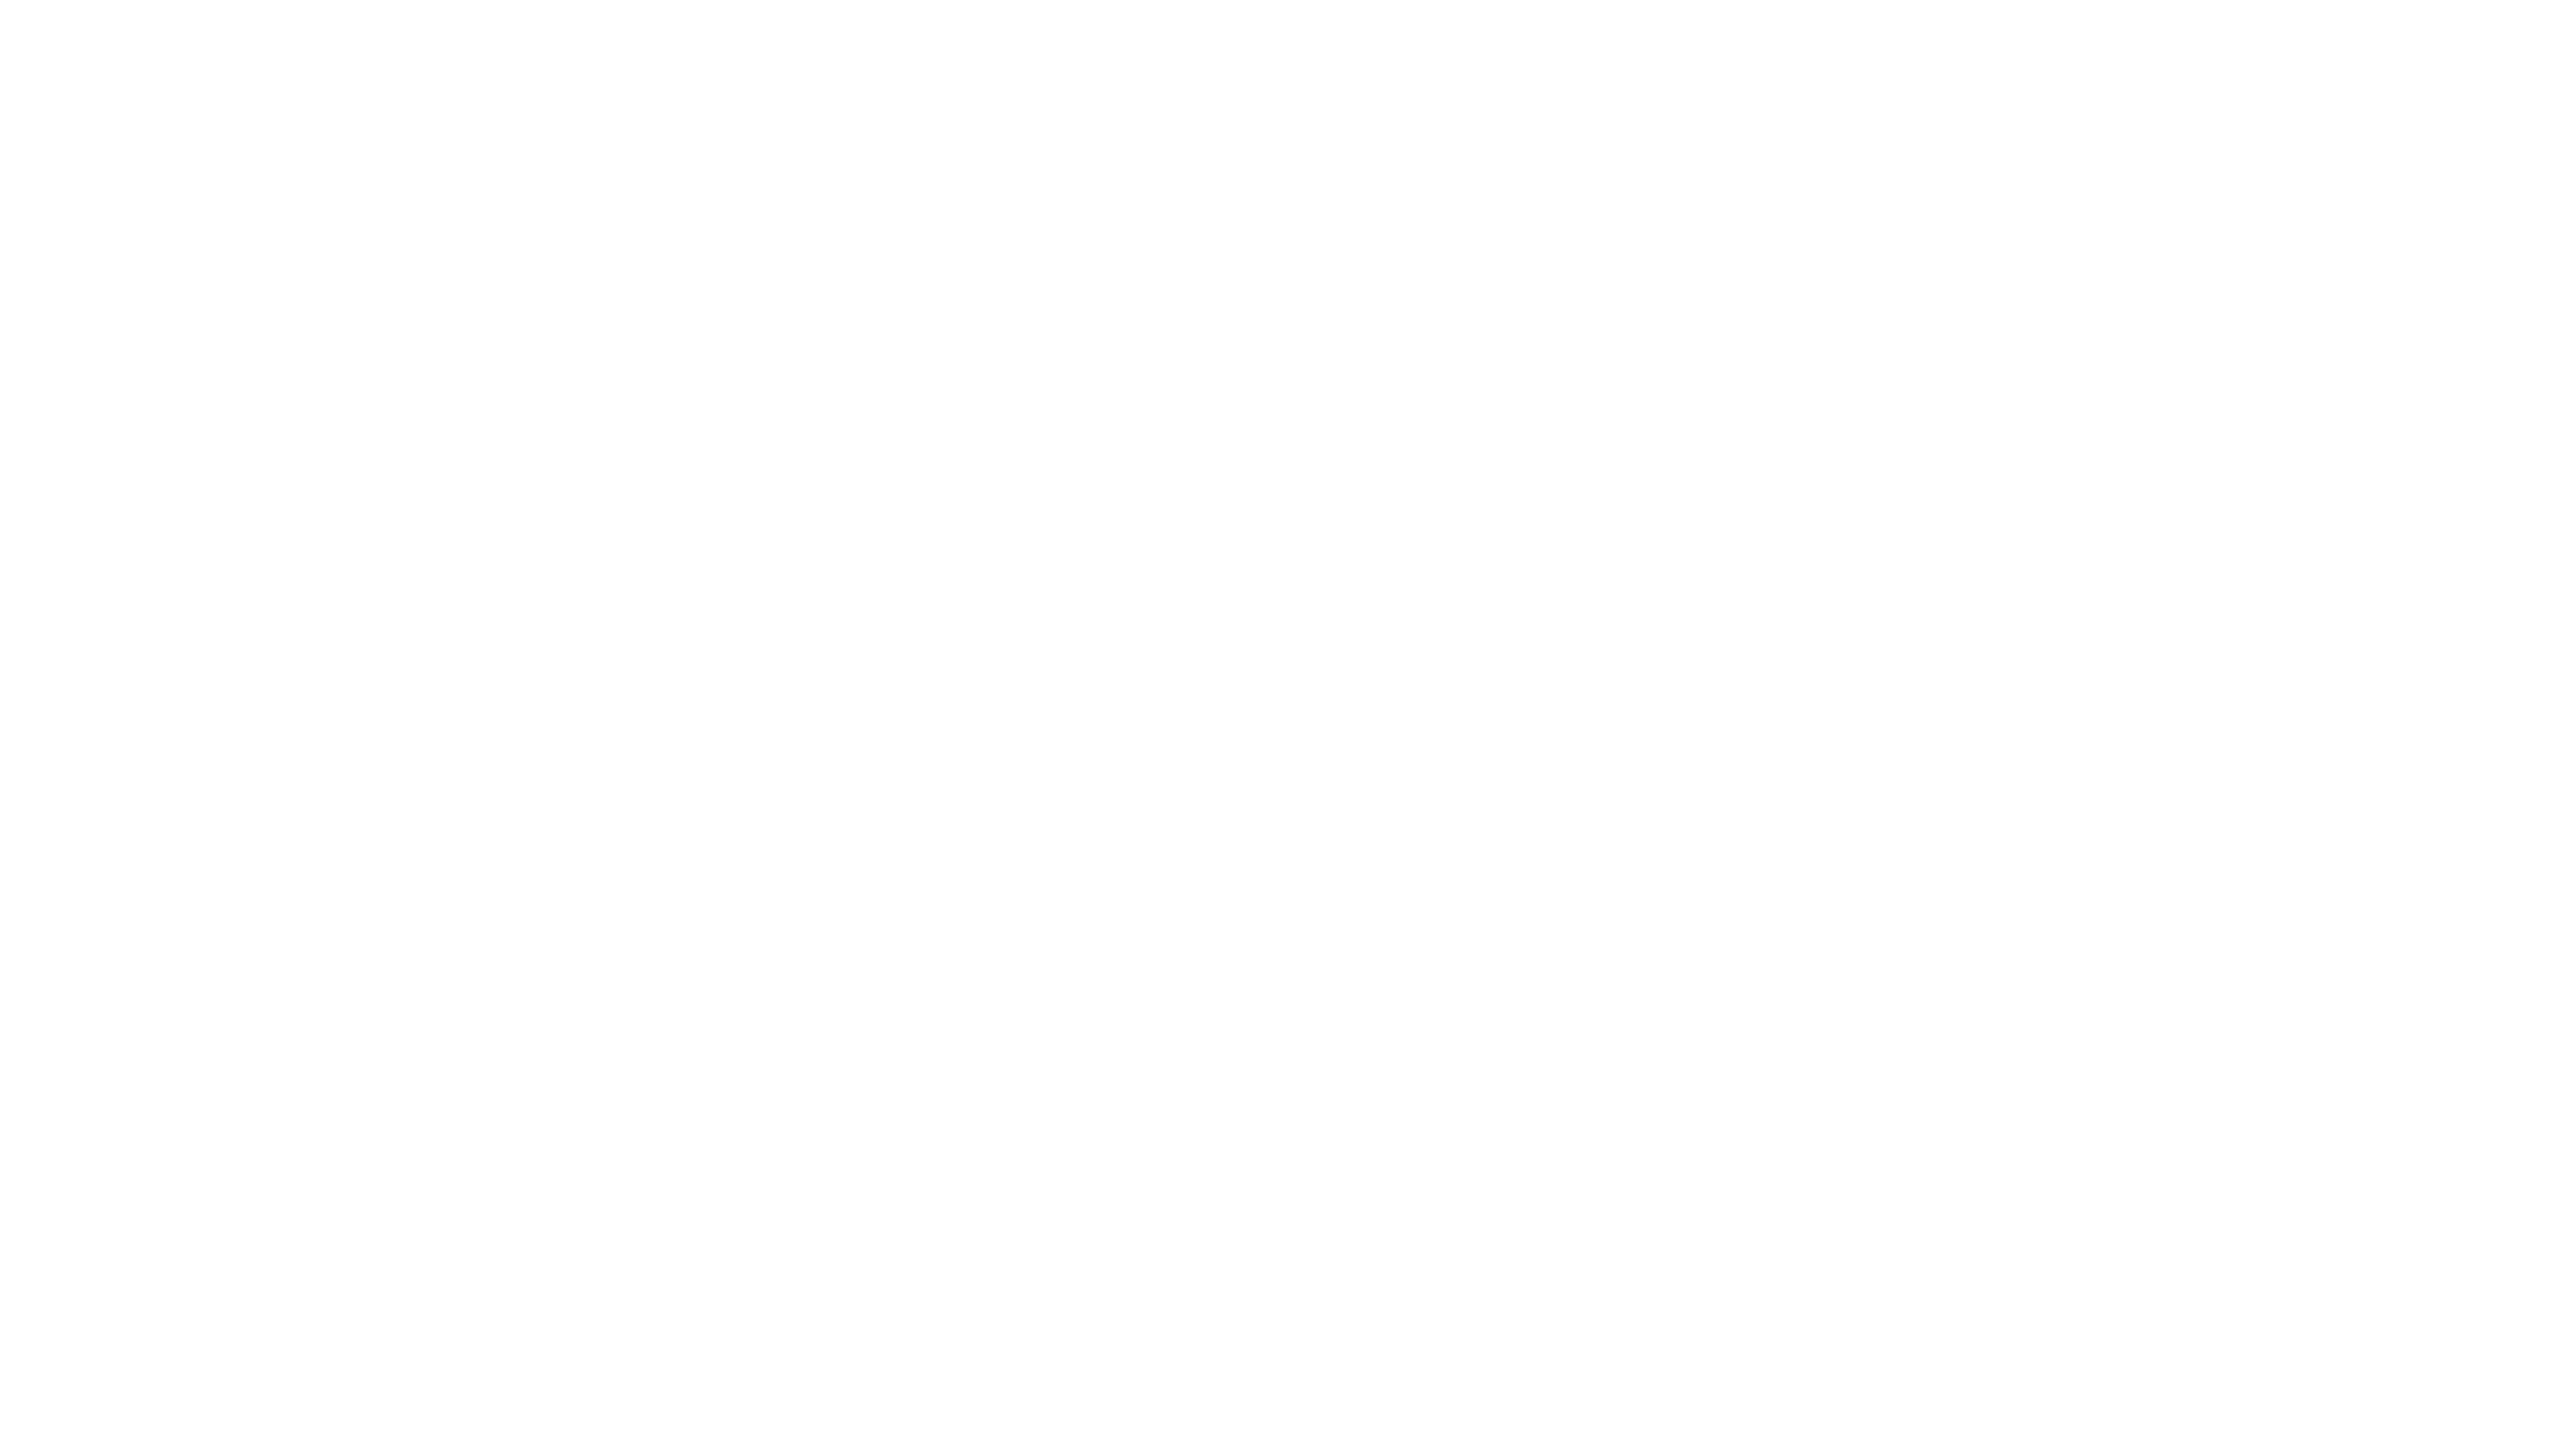 Rock Management LLC - Client